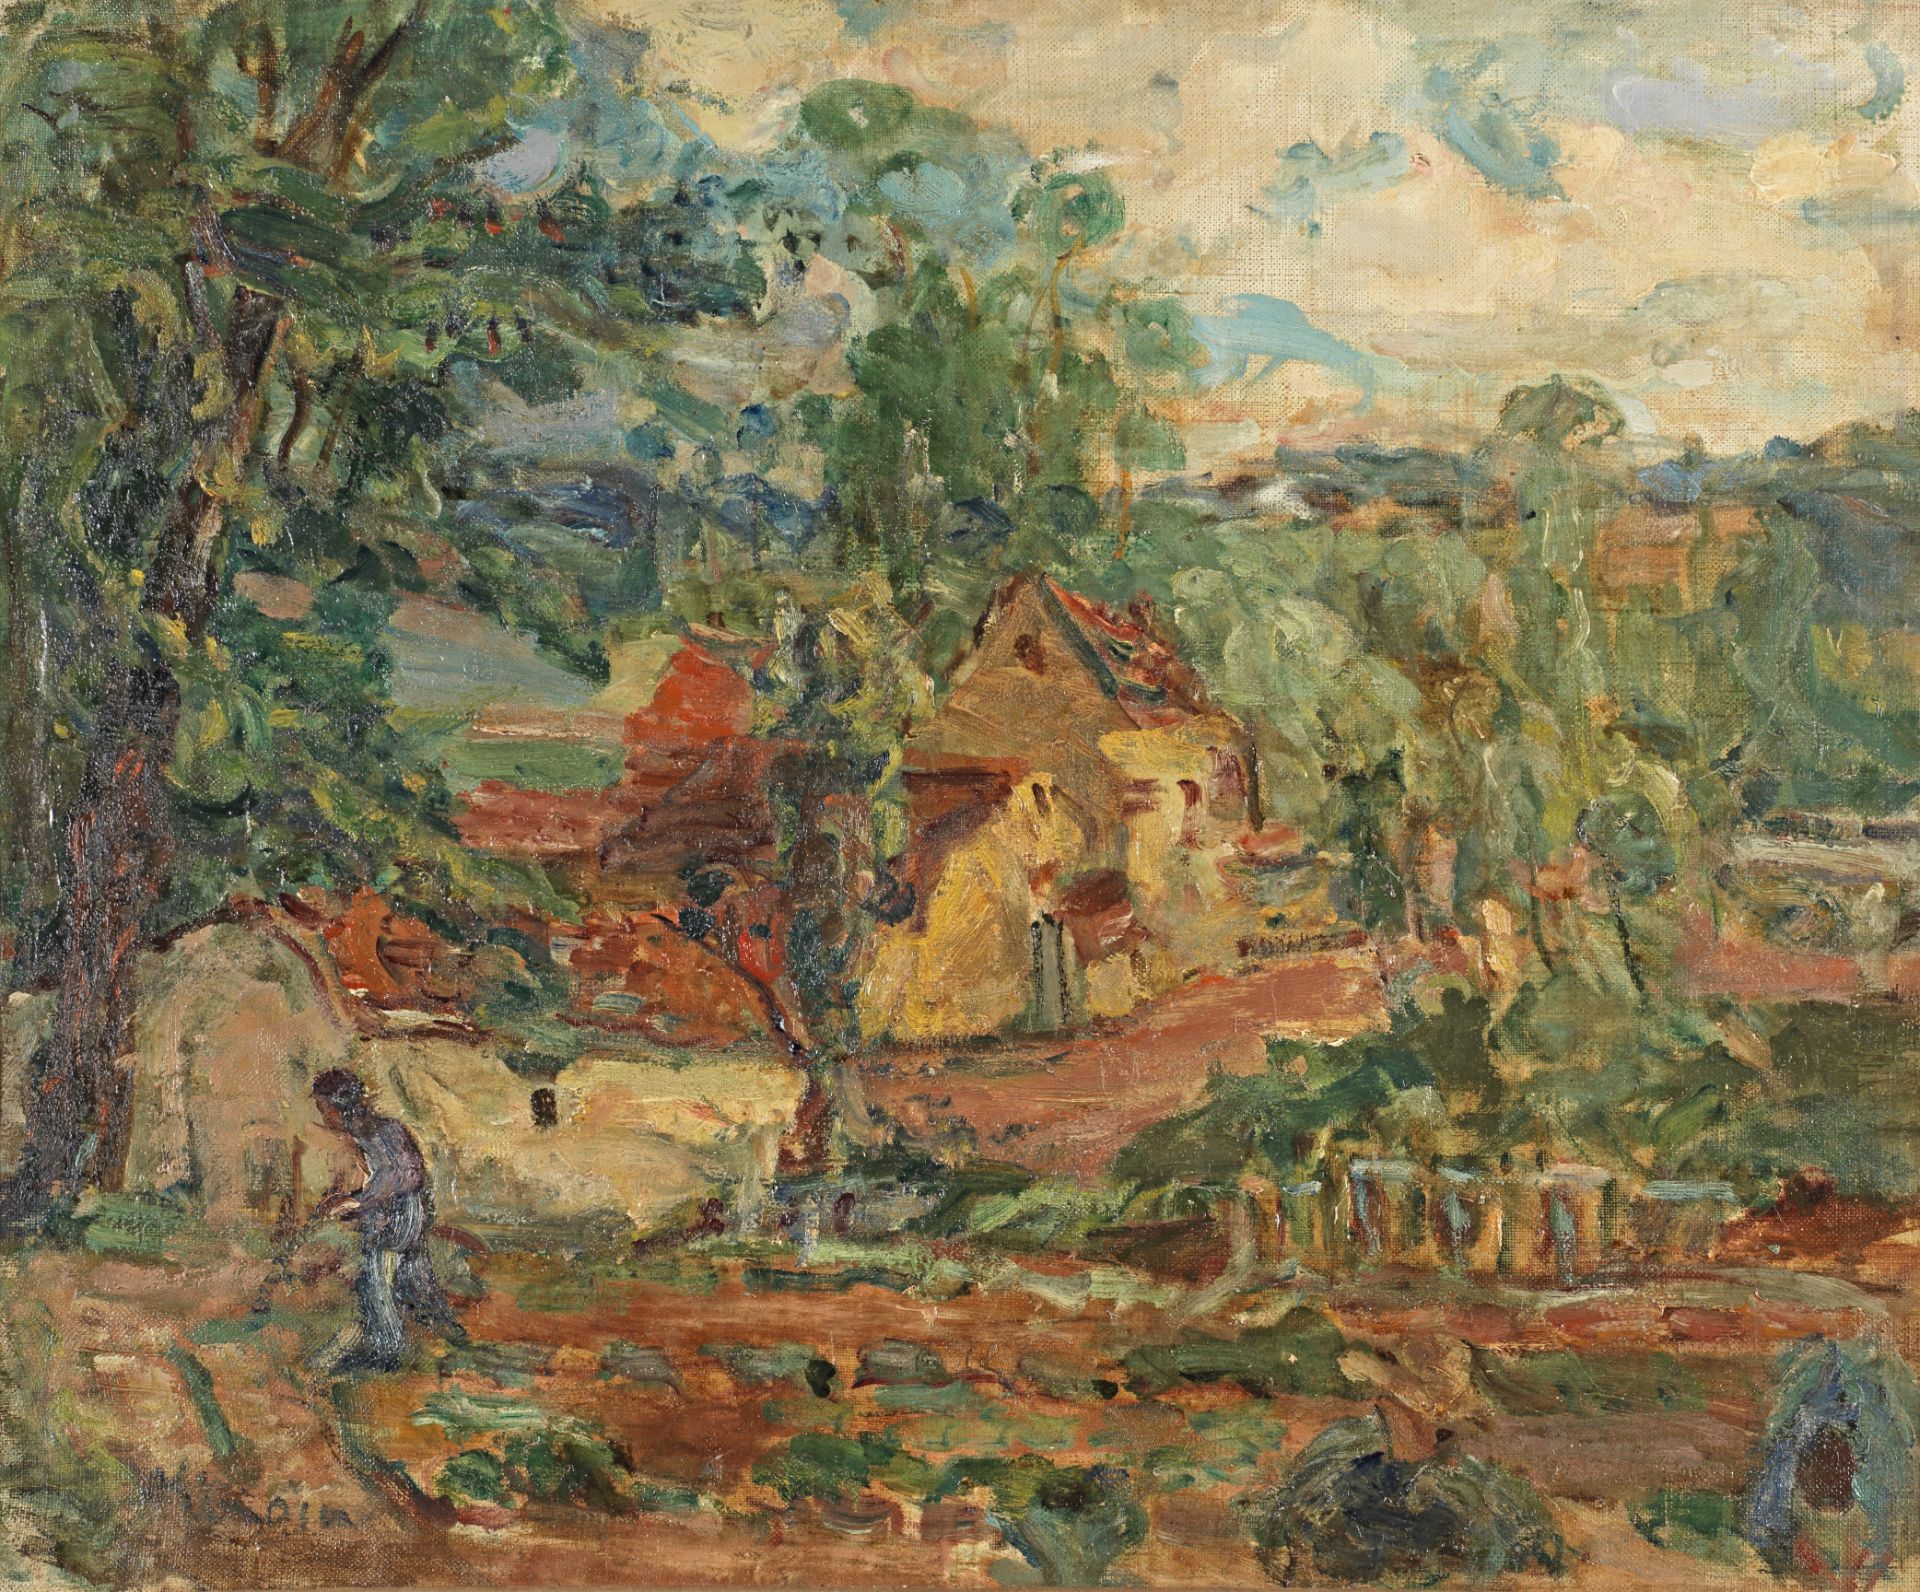 Michel Kikoine Dans le jardin Oil on canvas 46 x 55 cm